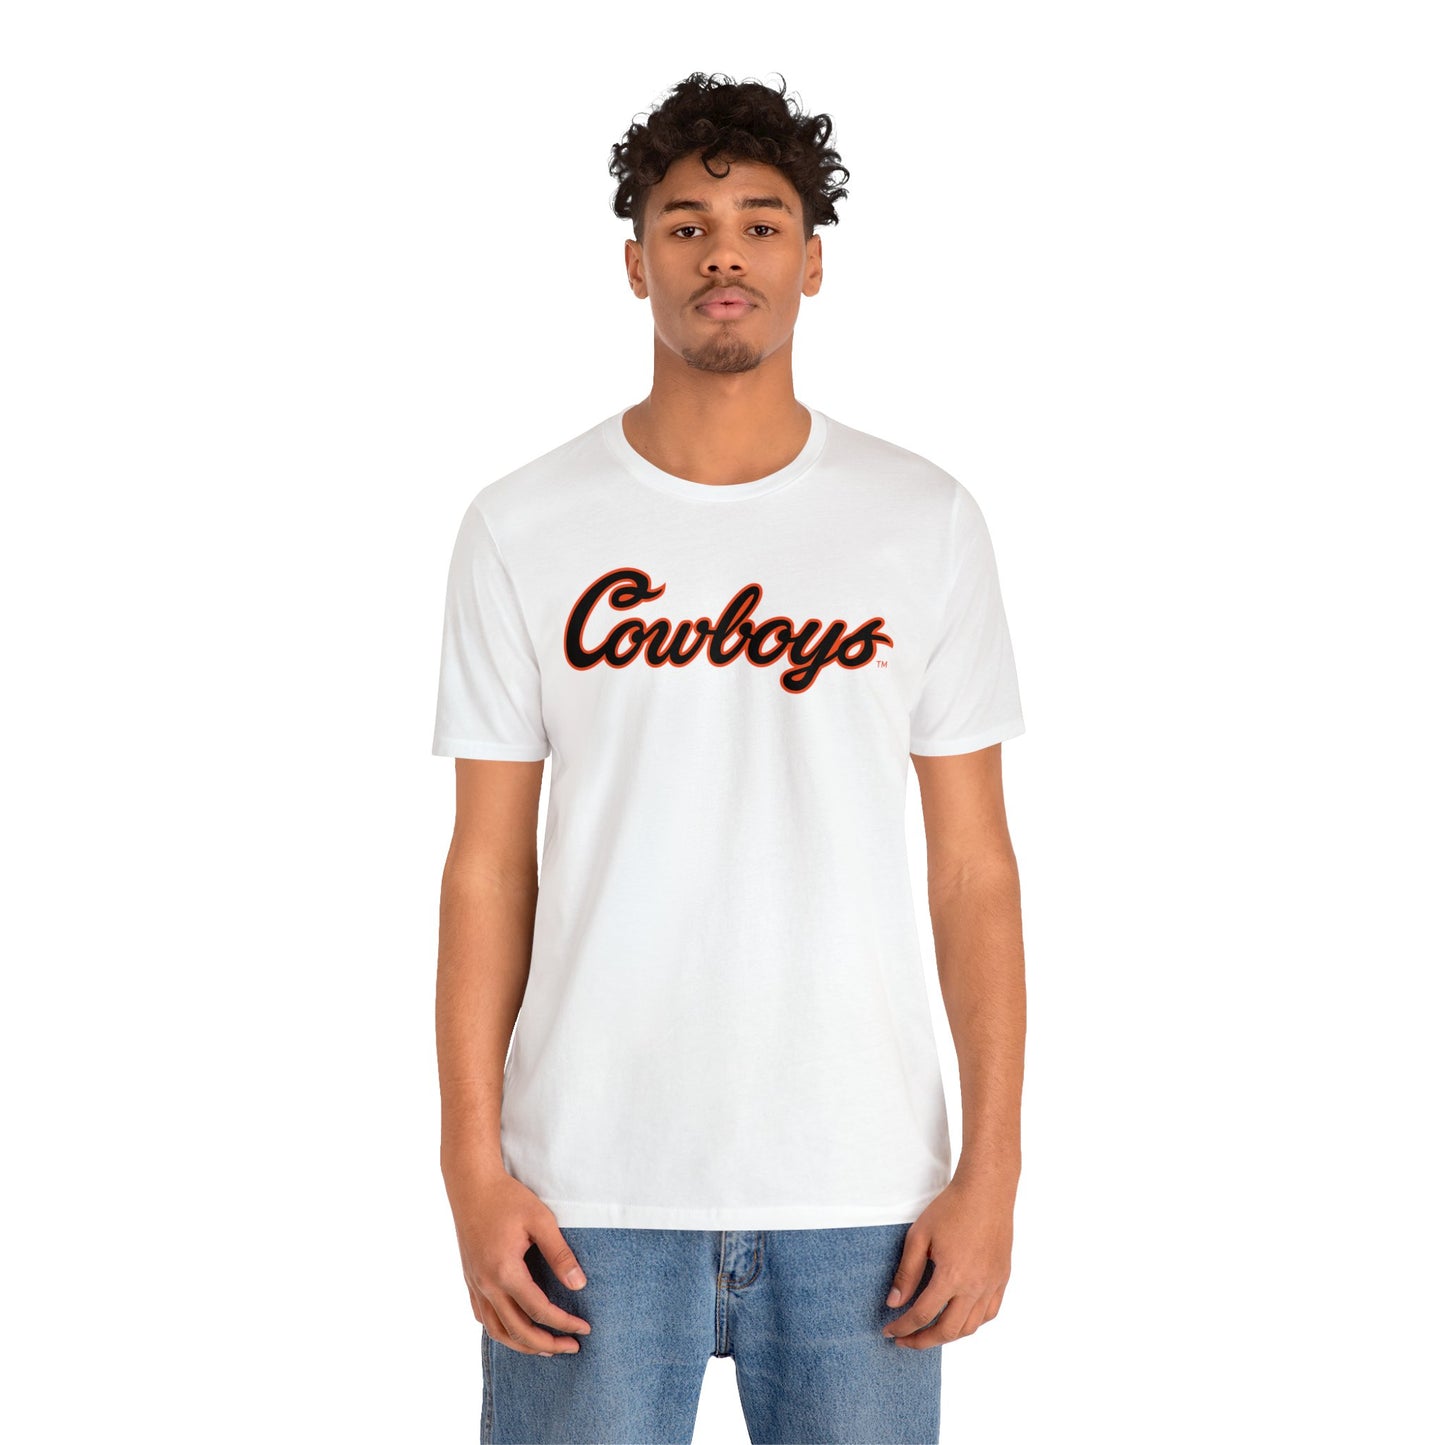 De'Zhaun Stribling #88 Cursive Cowboys T-Shirt